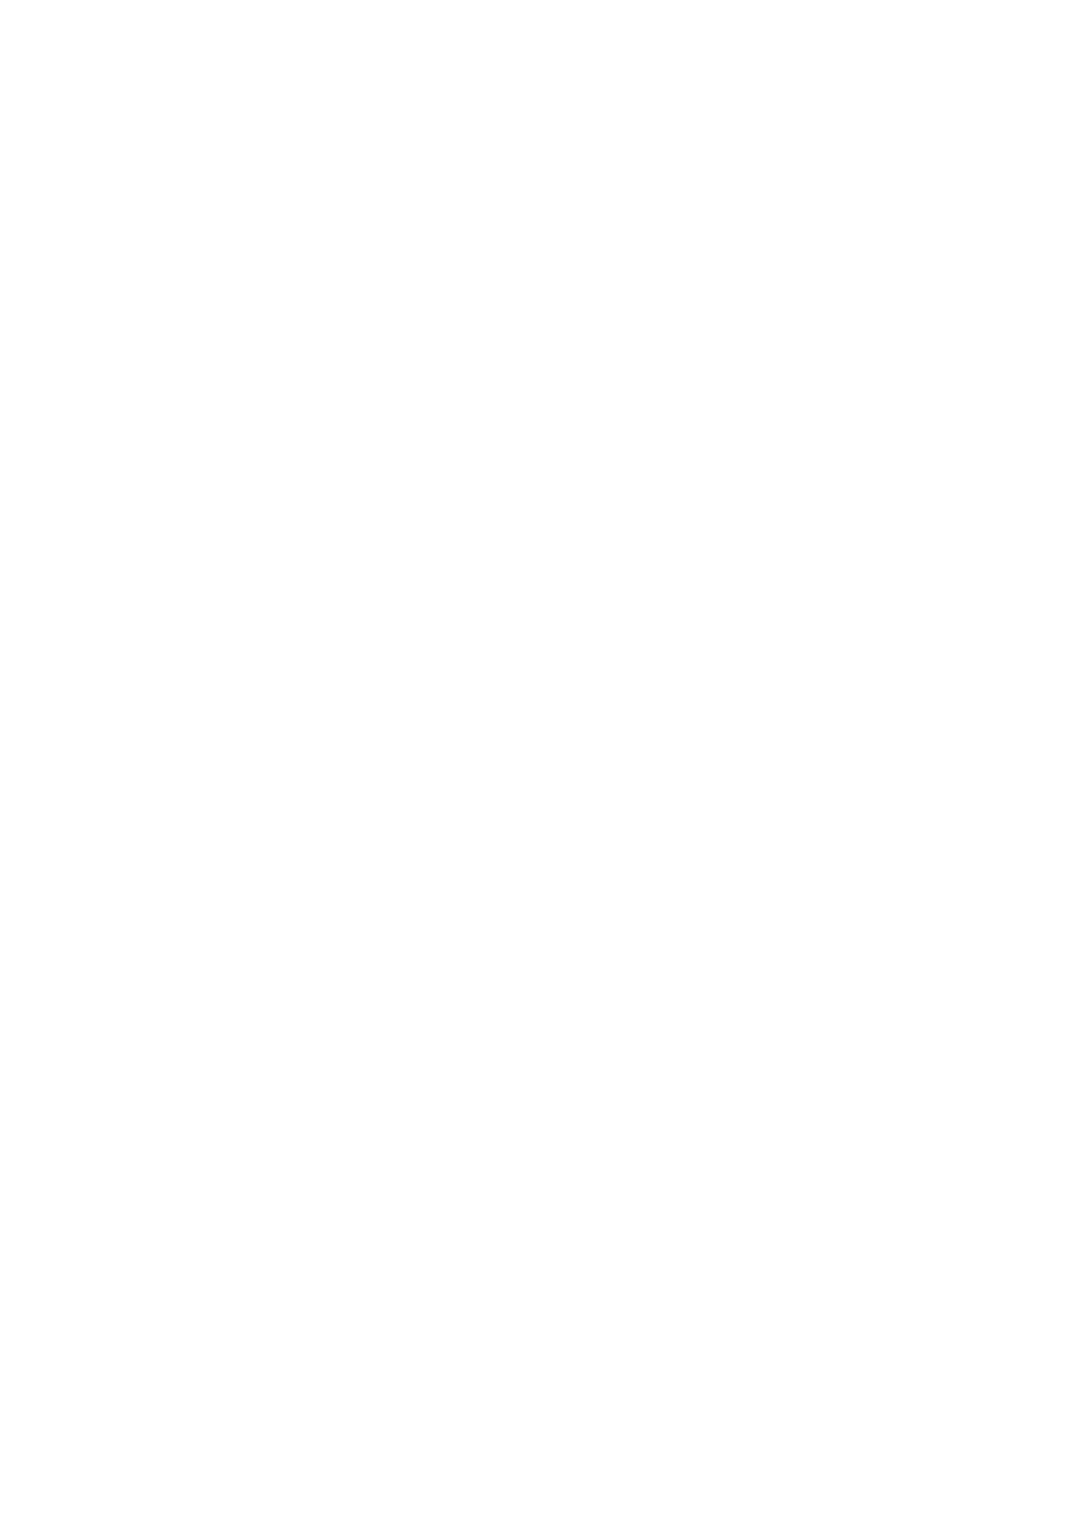 Dentsu logo for dark backgrounds (transparent PNG)